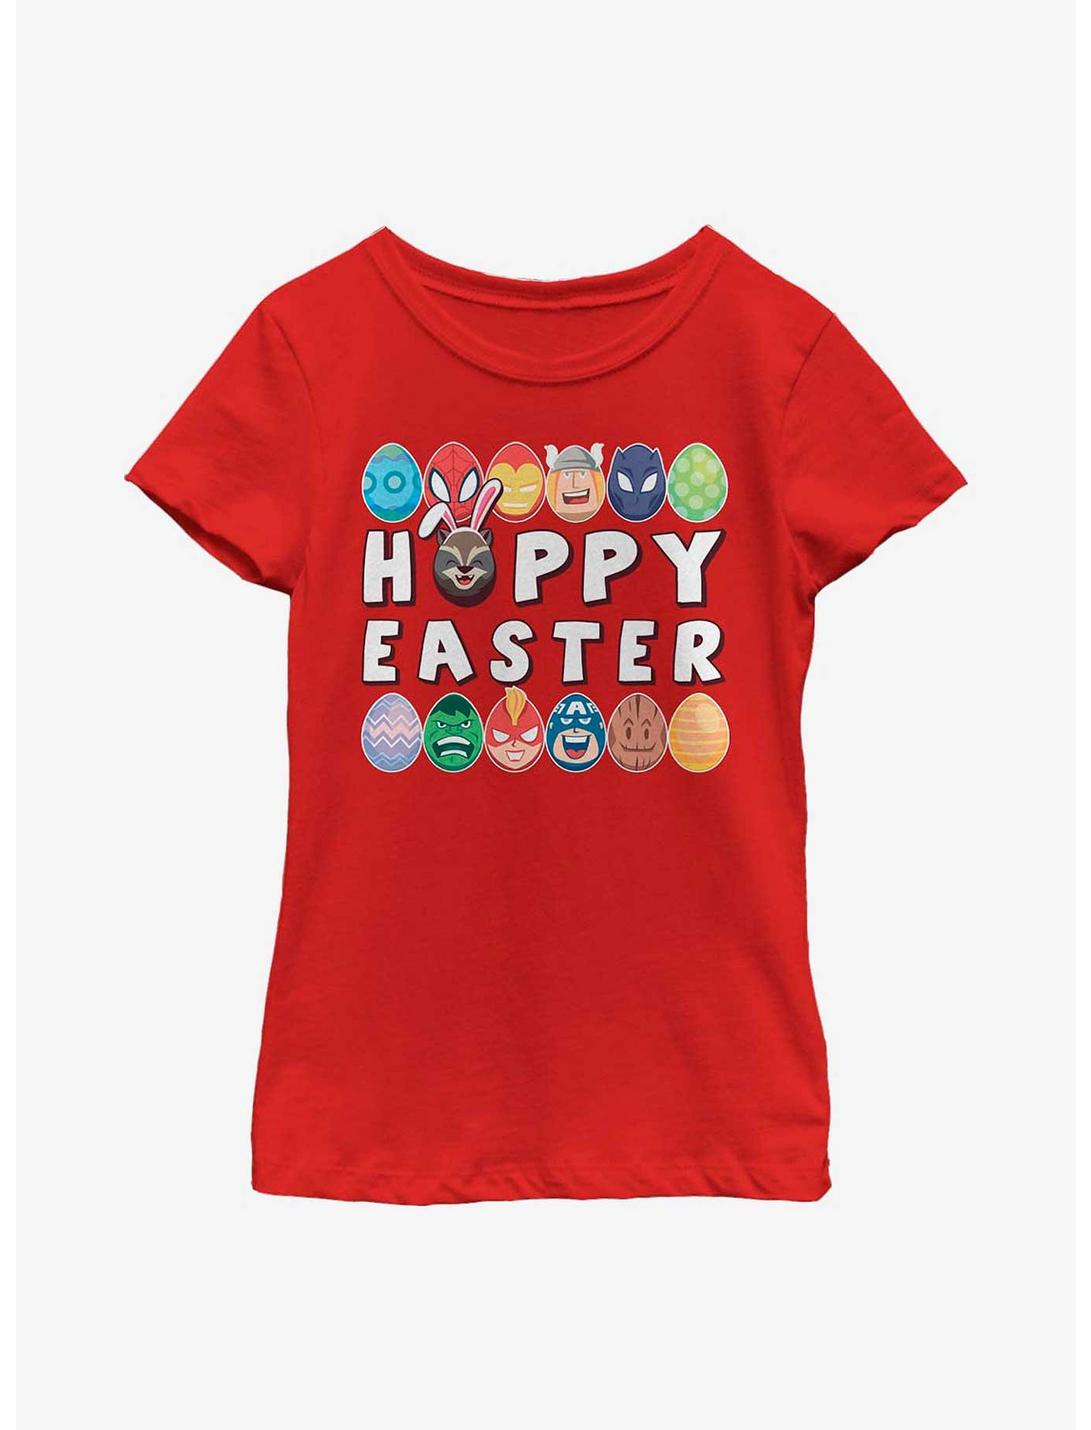 Marvel Avengers Hoppy Easter Youth Girls T-Shirt, RED, hi-res